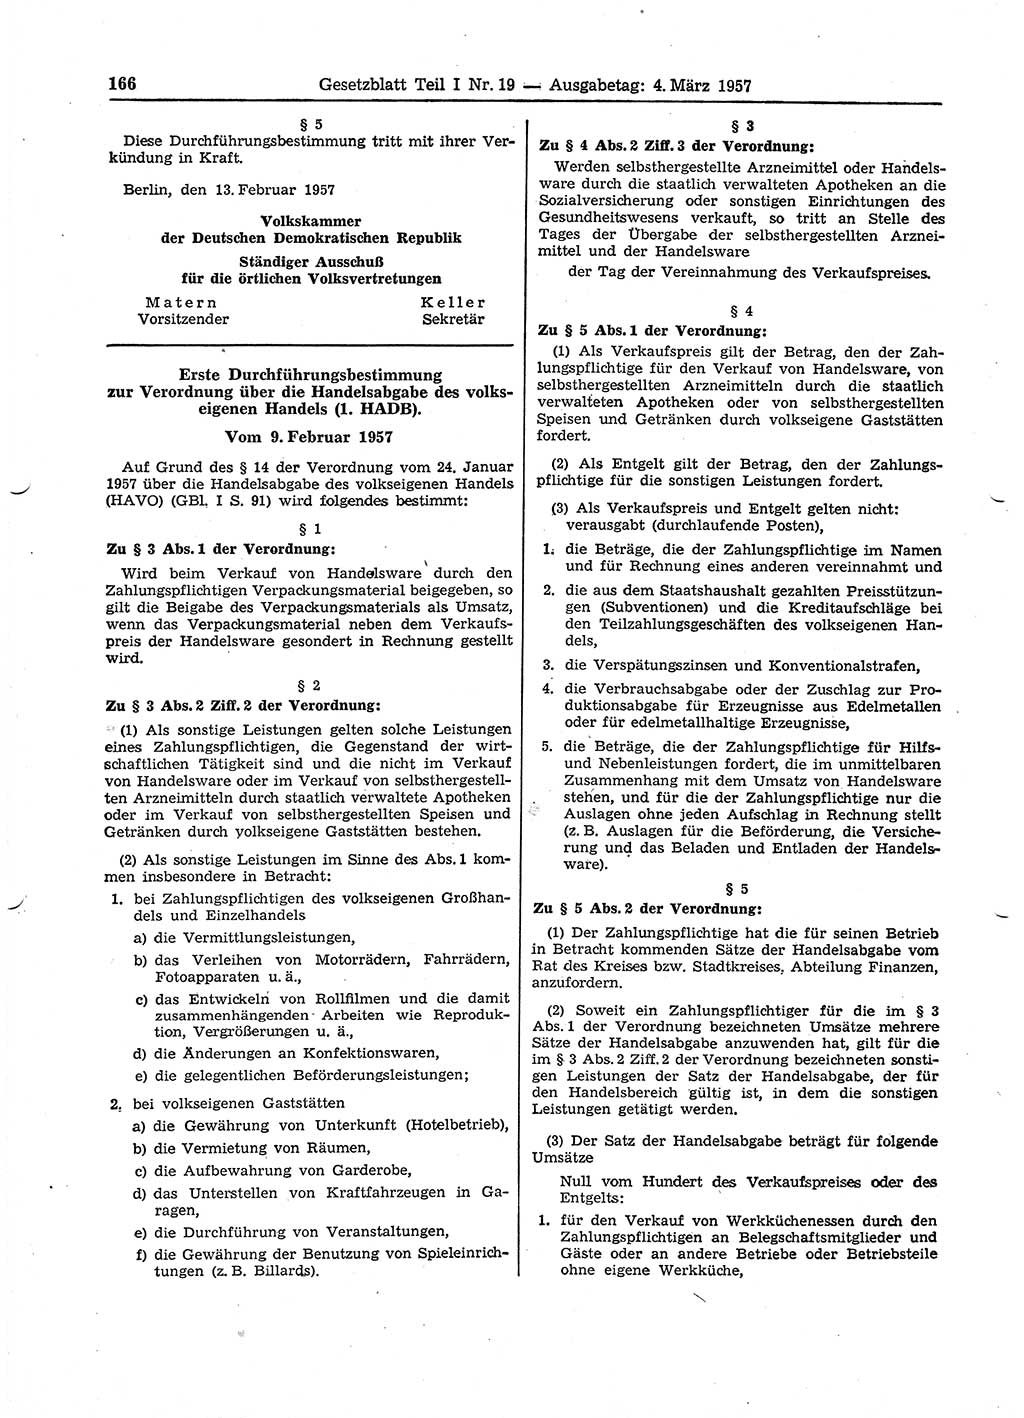 Gesetzblatt (GBl.) der Deutschen Demokratischen Republik (DDR) Teil Ⅰ 1957, Seite 166 (GBl. DDR Ⅰ 1957, S. 166)